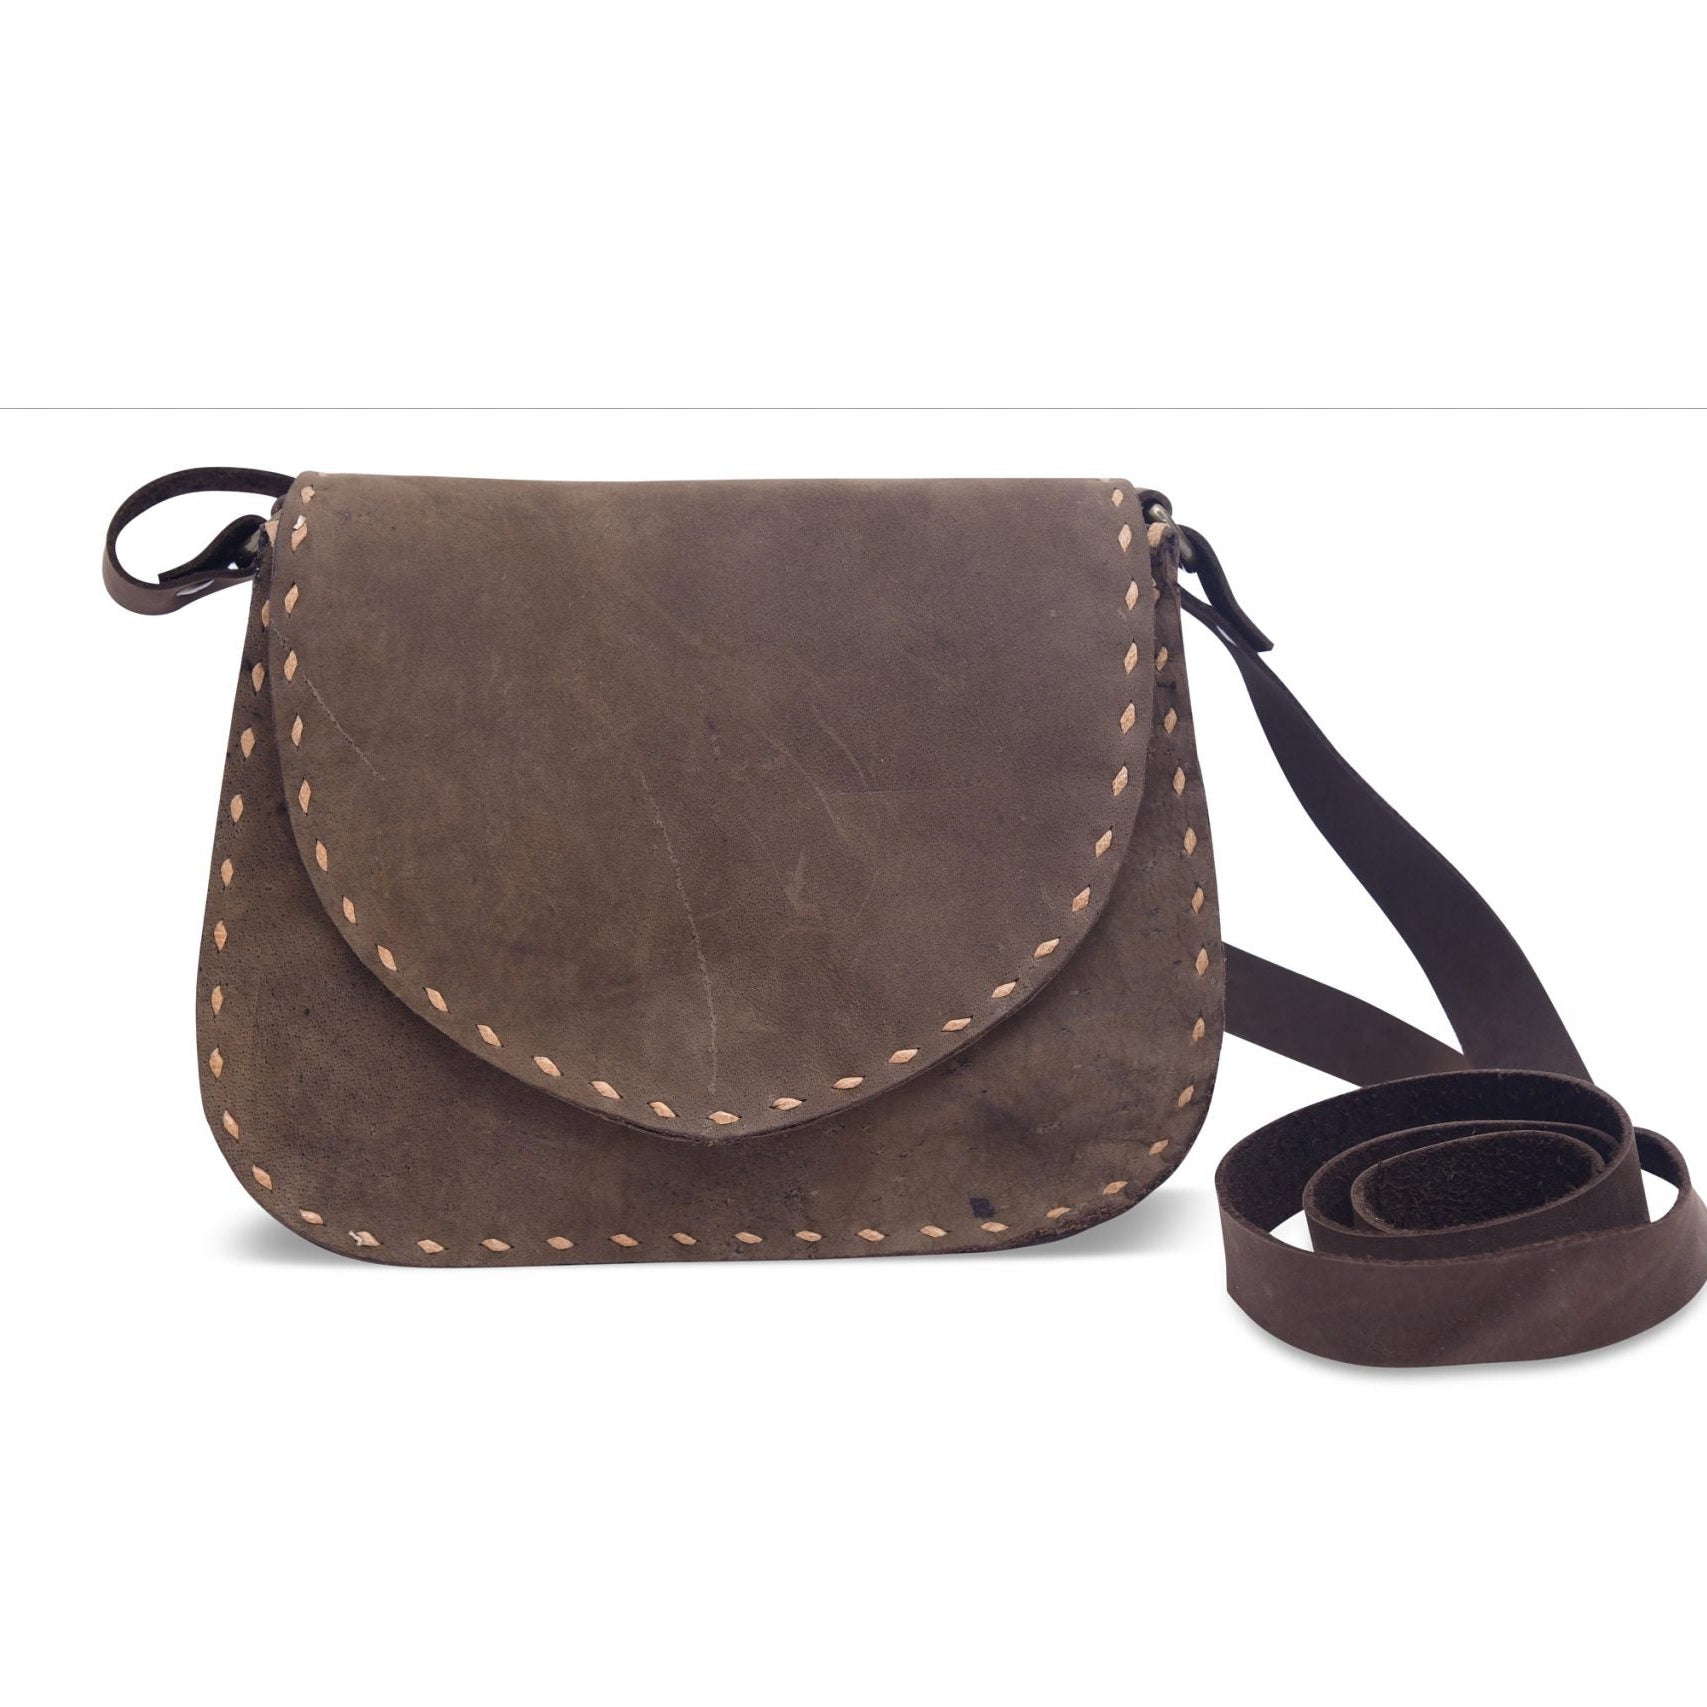 Leather Messenger Crossbody Shoulder Bag - Versatile Travel Satchel